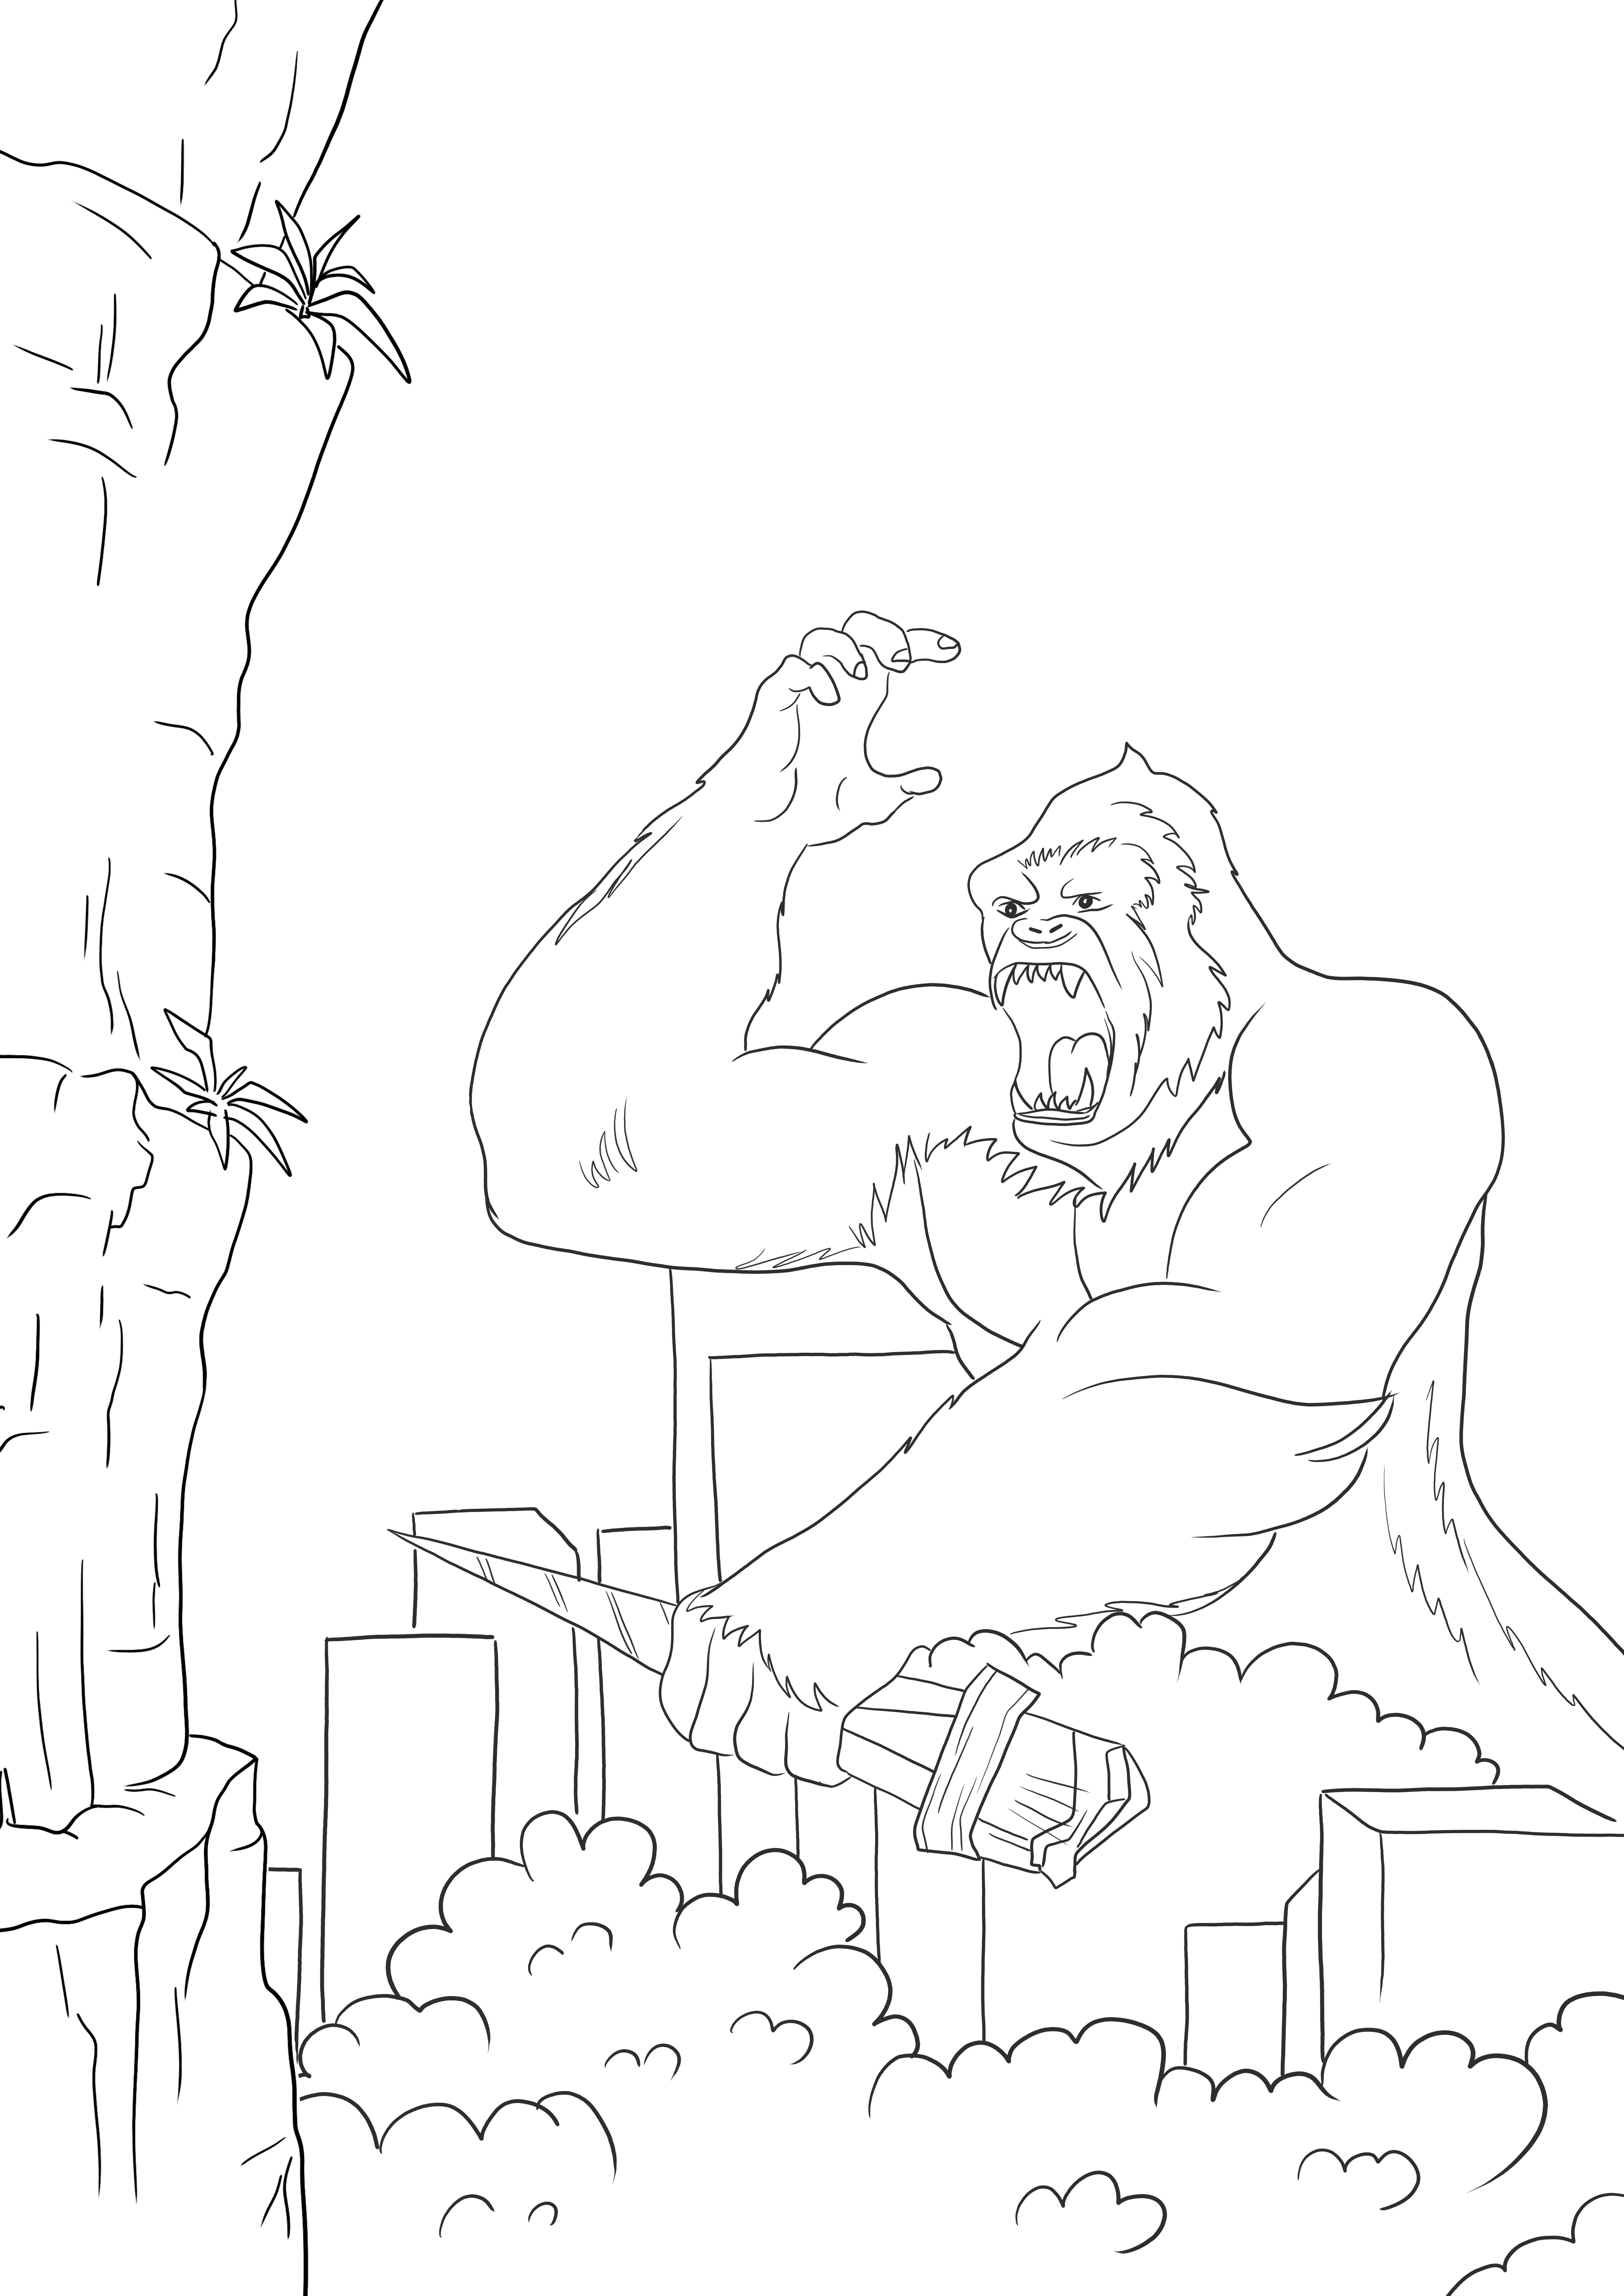 King Kong vs Godzilla ingyenes színezés nyomtatható vagy letölthető